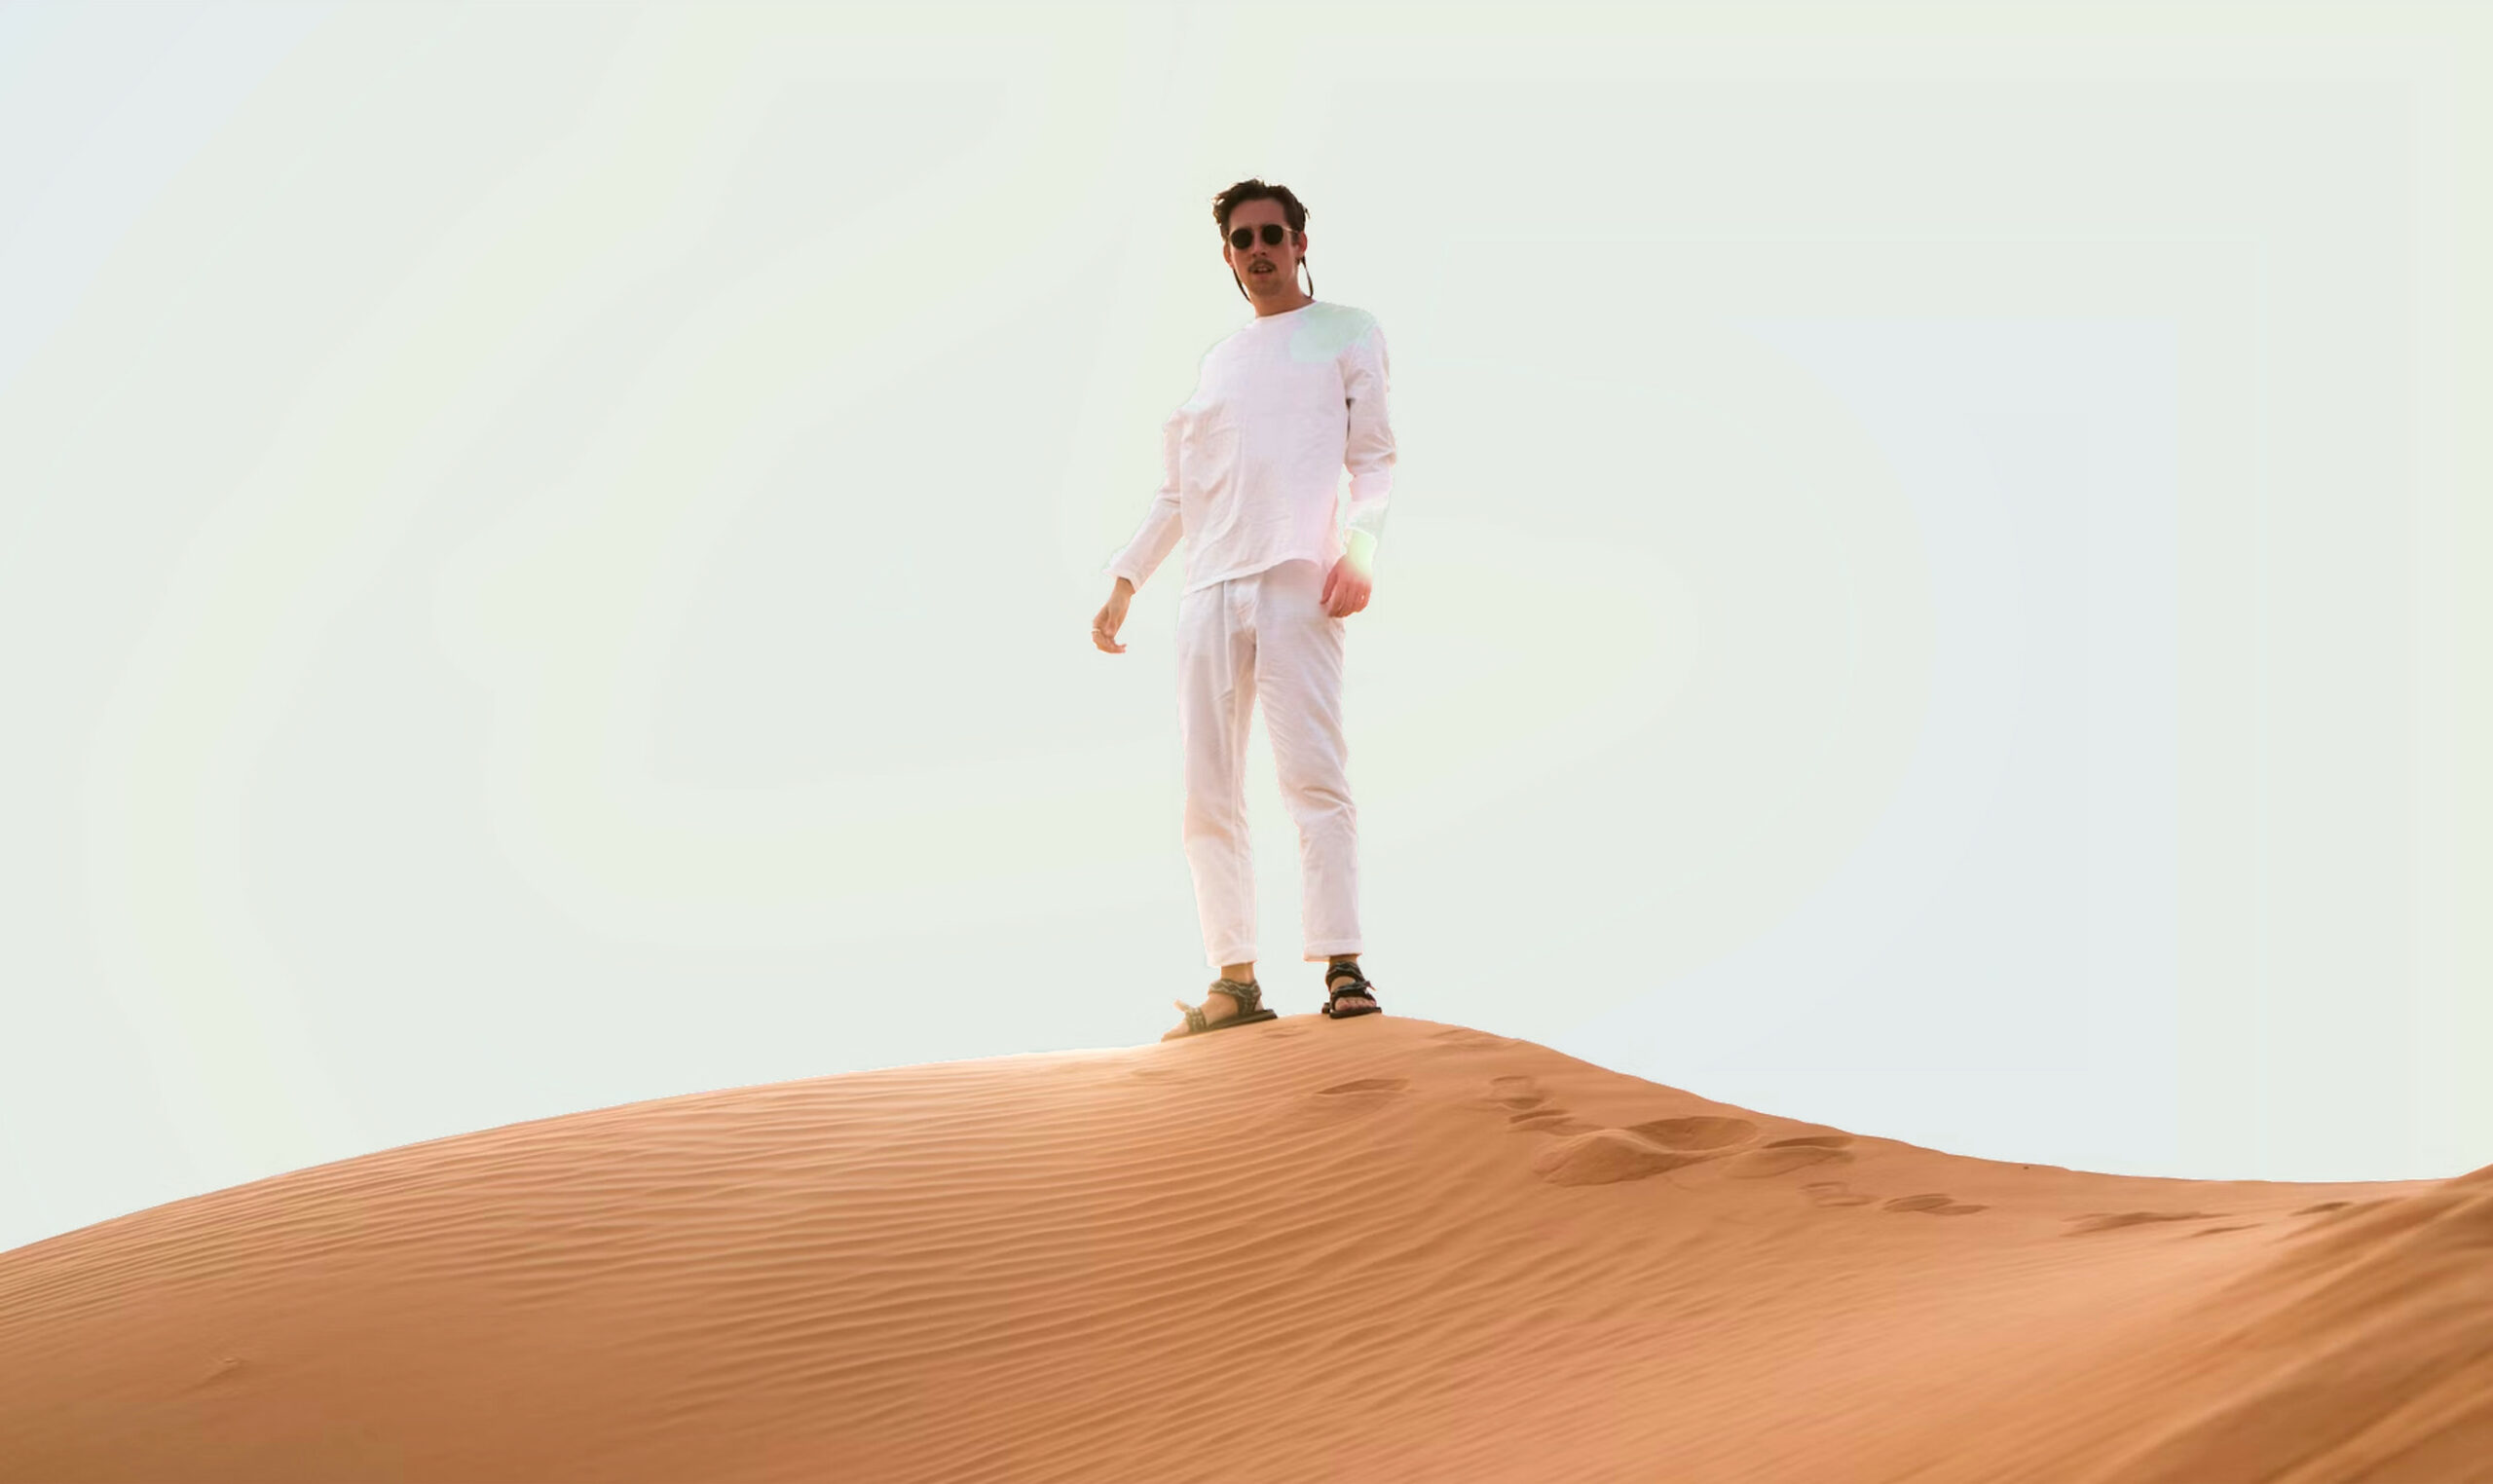 Φορώντας σανδάλια σε έναν αμμόλοφο της ερήμου